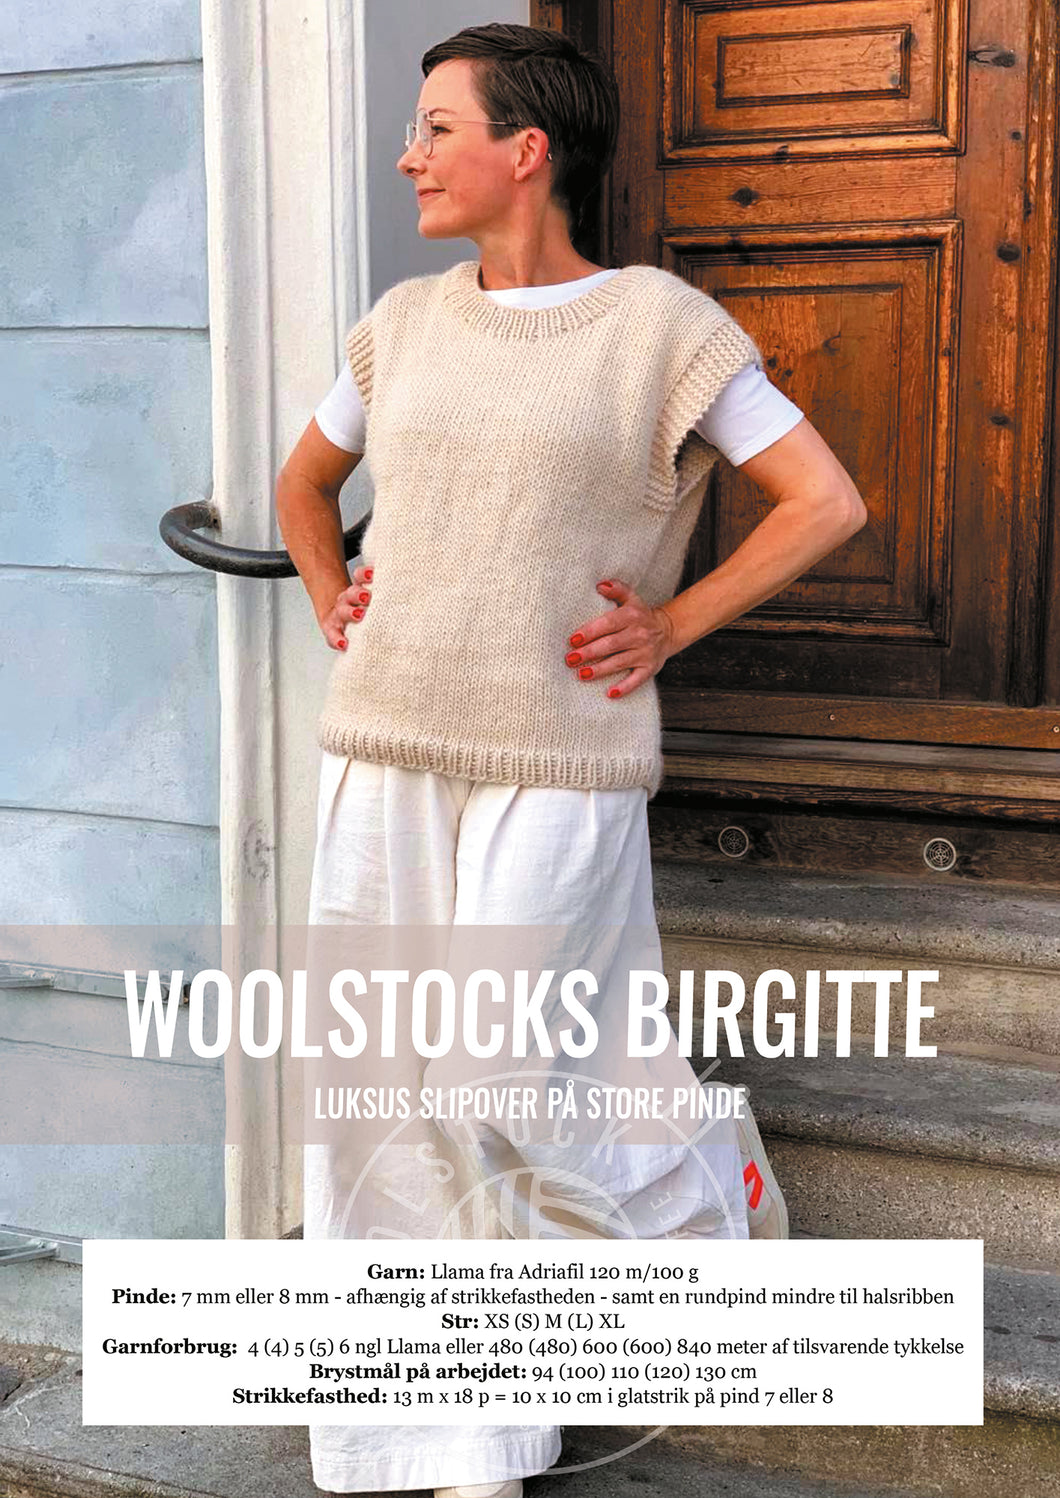 Woolstocks Birgitte